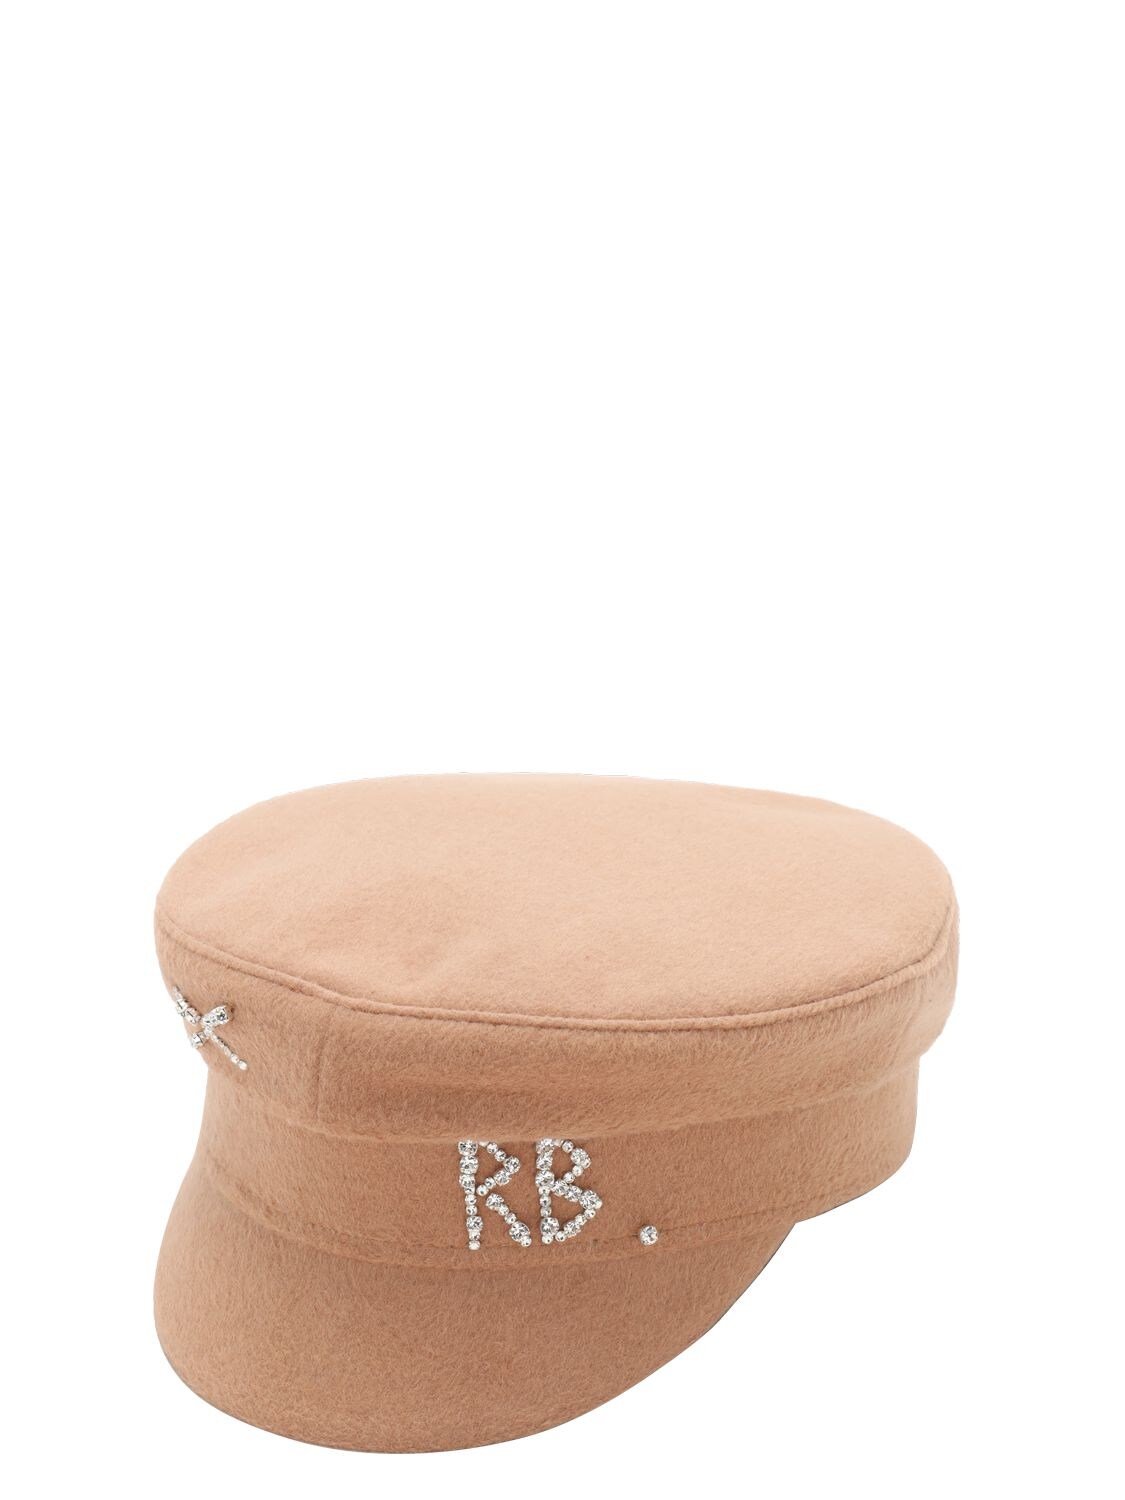 RUSLAN BAGINSKIY “BAKER BOY”羊毛帽子,72I99I006-QKVJR0U1